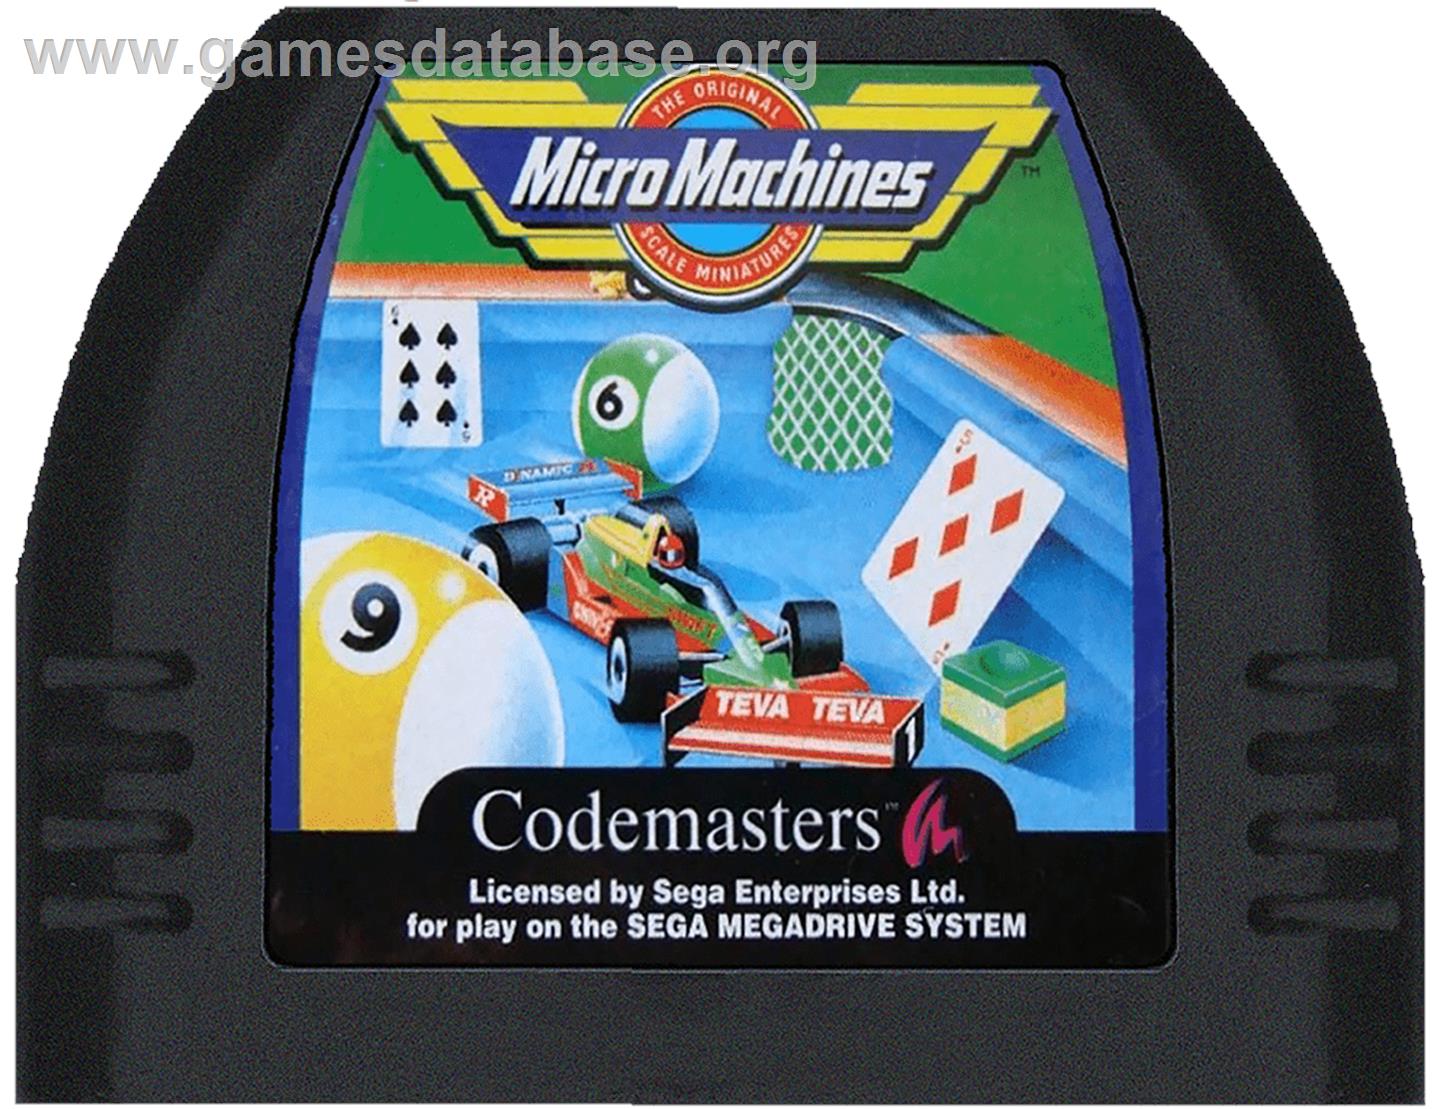 Micro Machines: Turbo Tournament 96 - Sega Genesis - Artwork - Cartridge